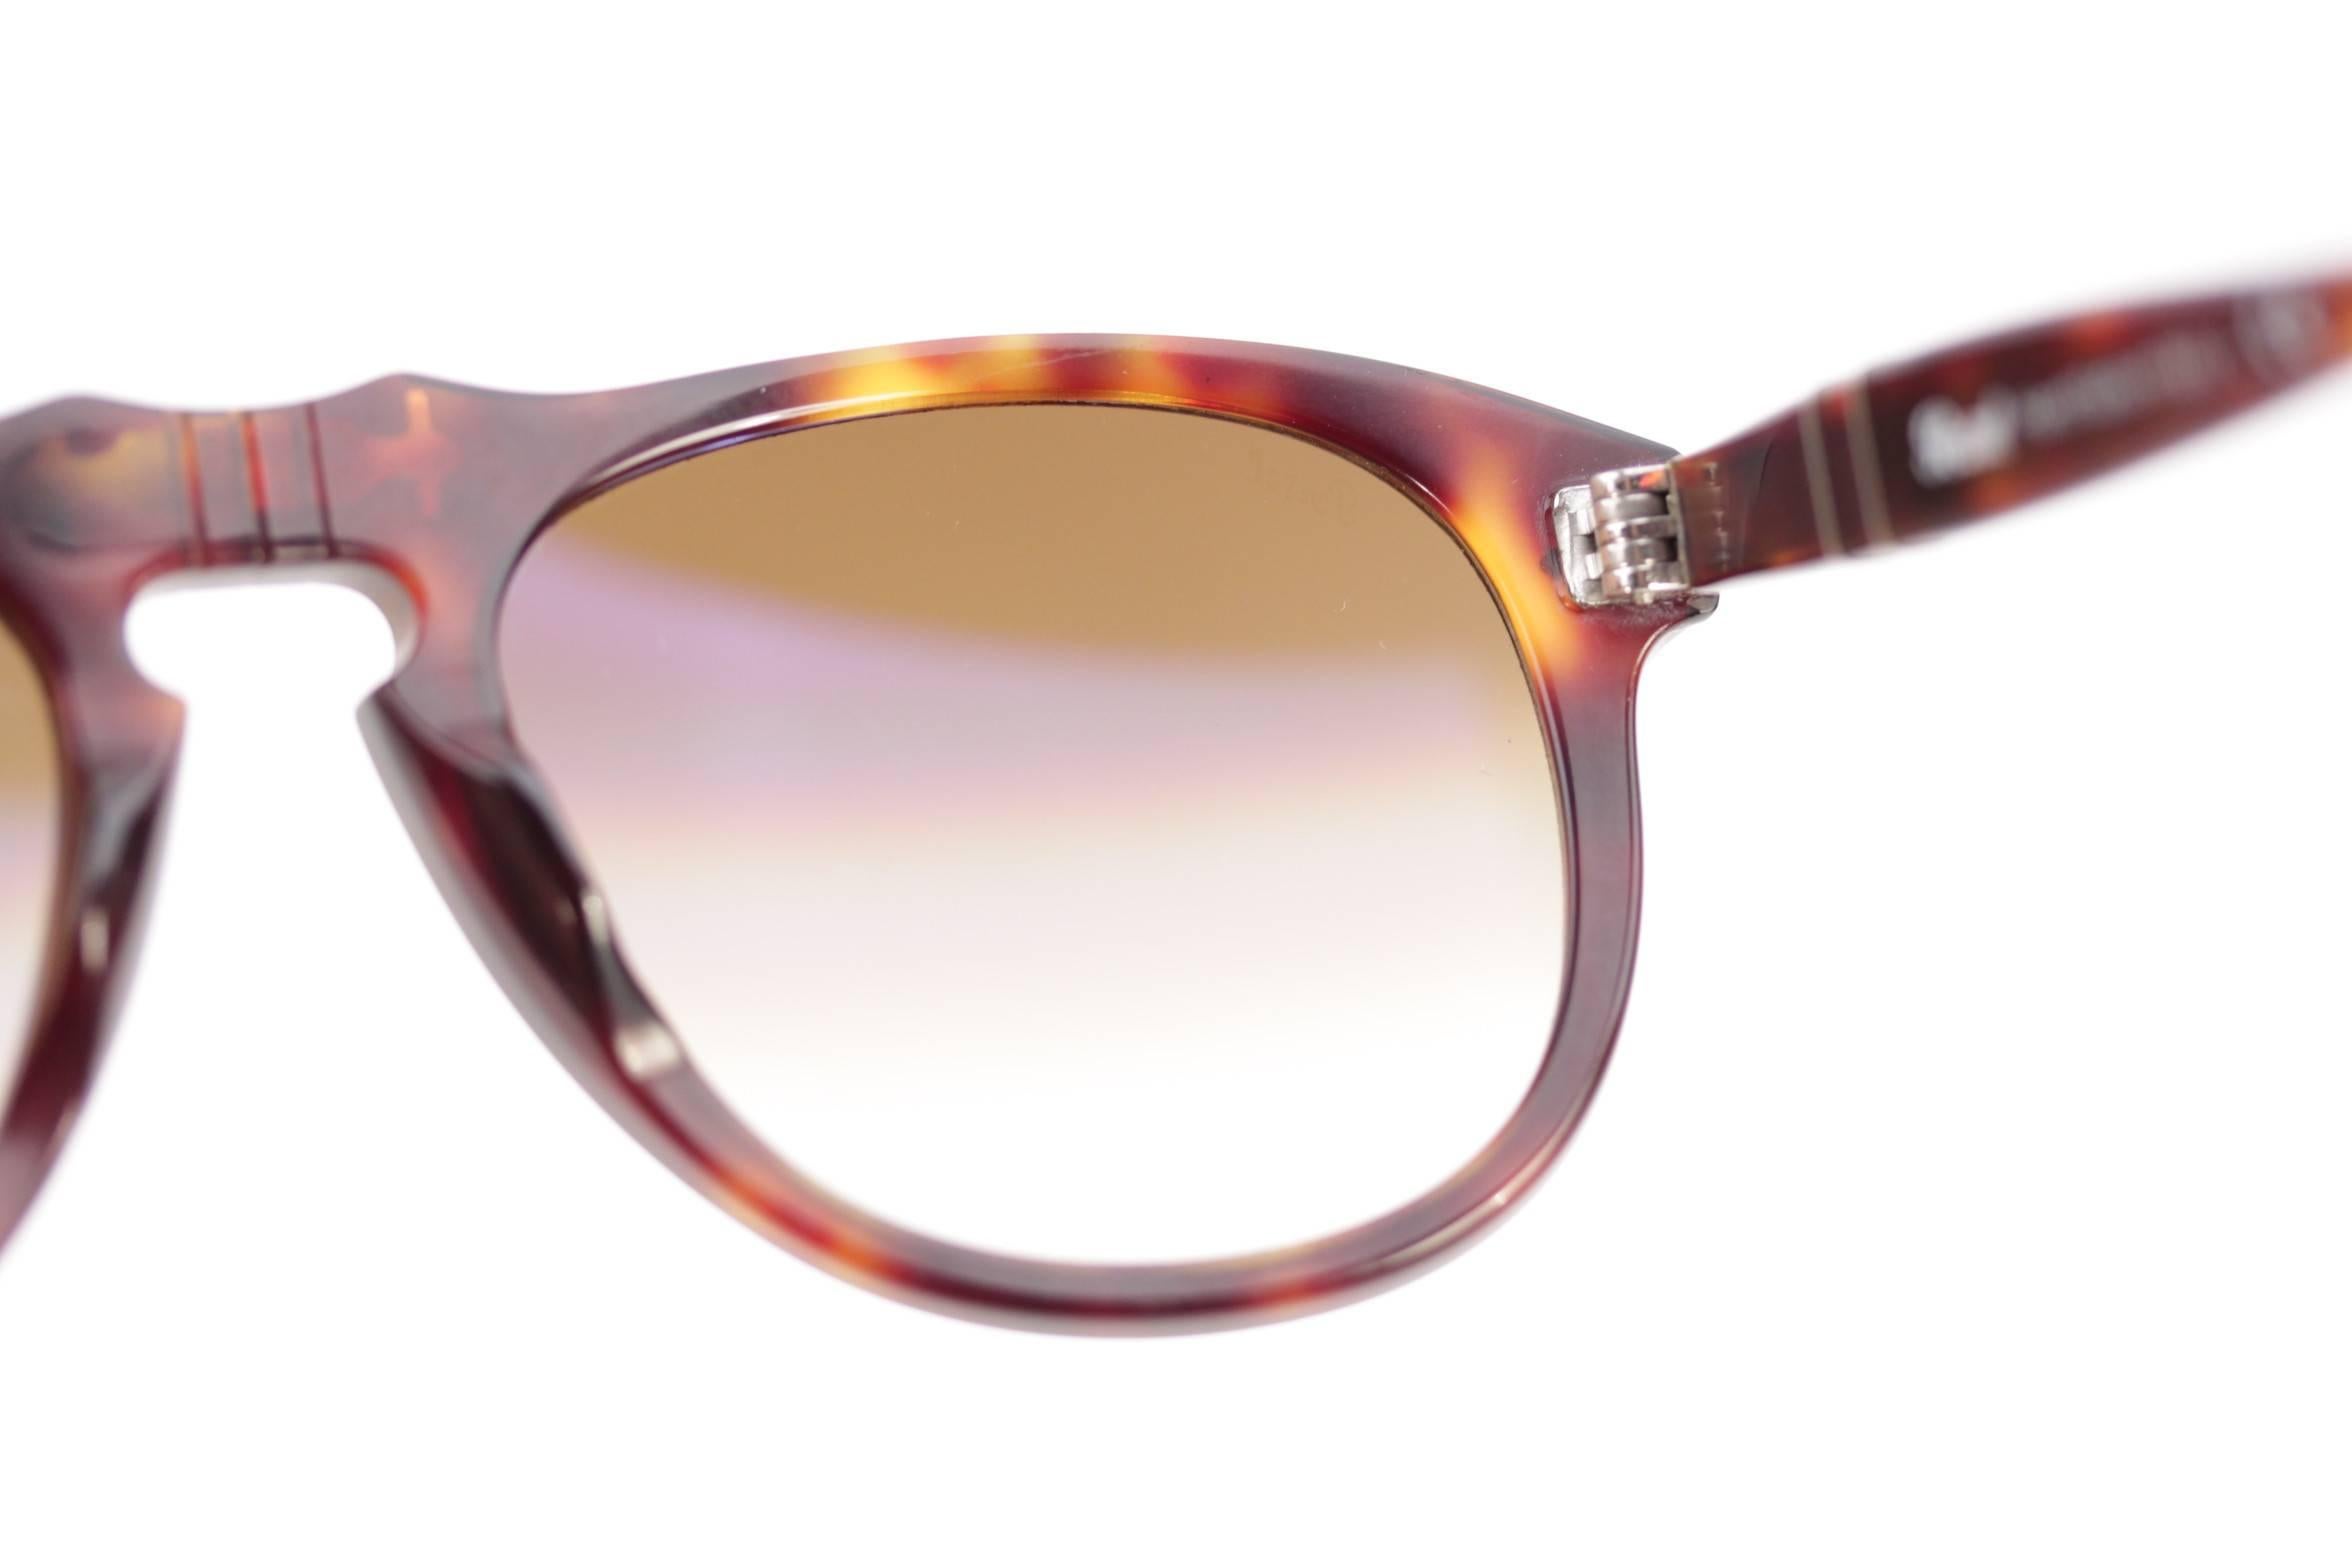 Beige  PERSOL sunglasses HAVANA 649 24/51 52/20 135 2N MEFLECTO eyewear w/CASE